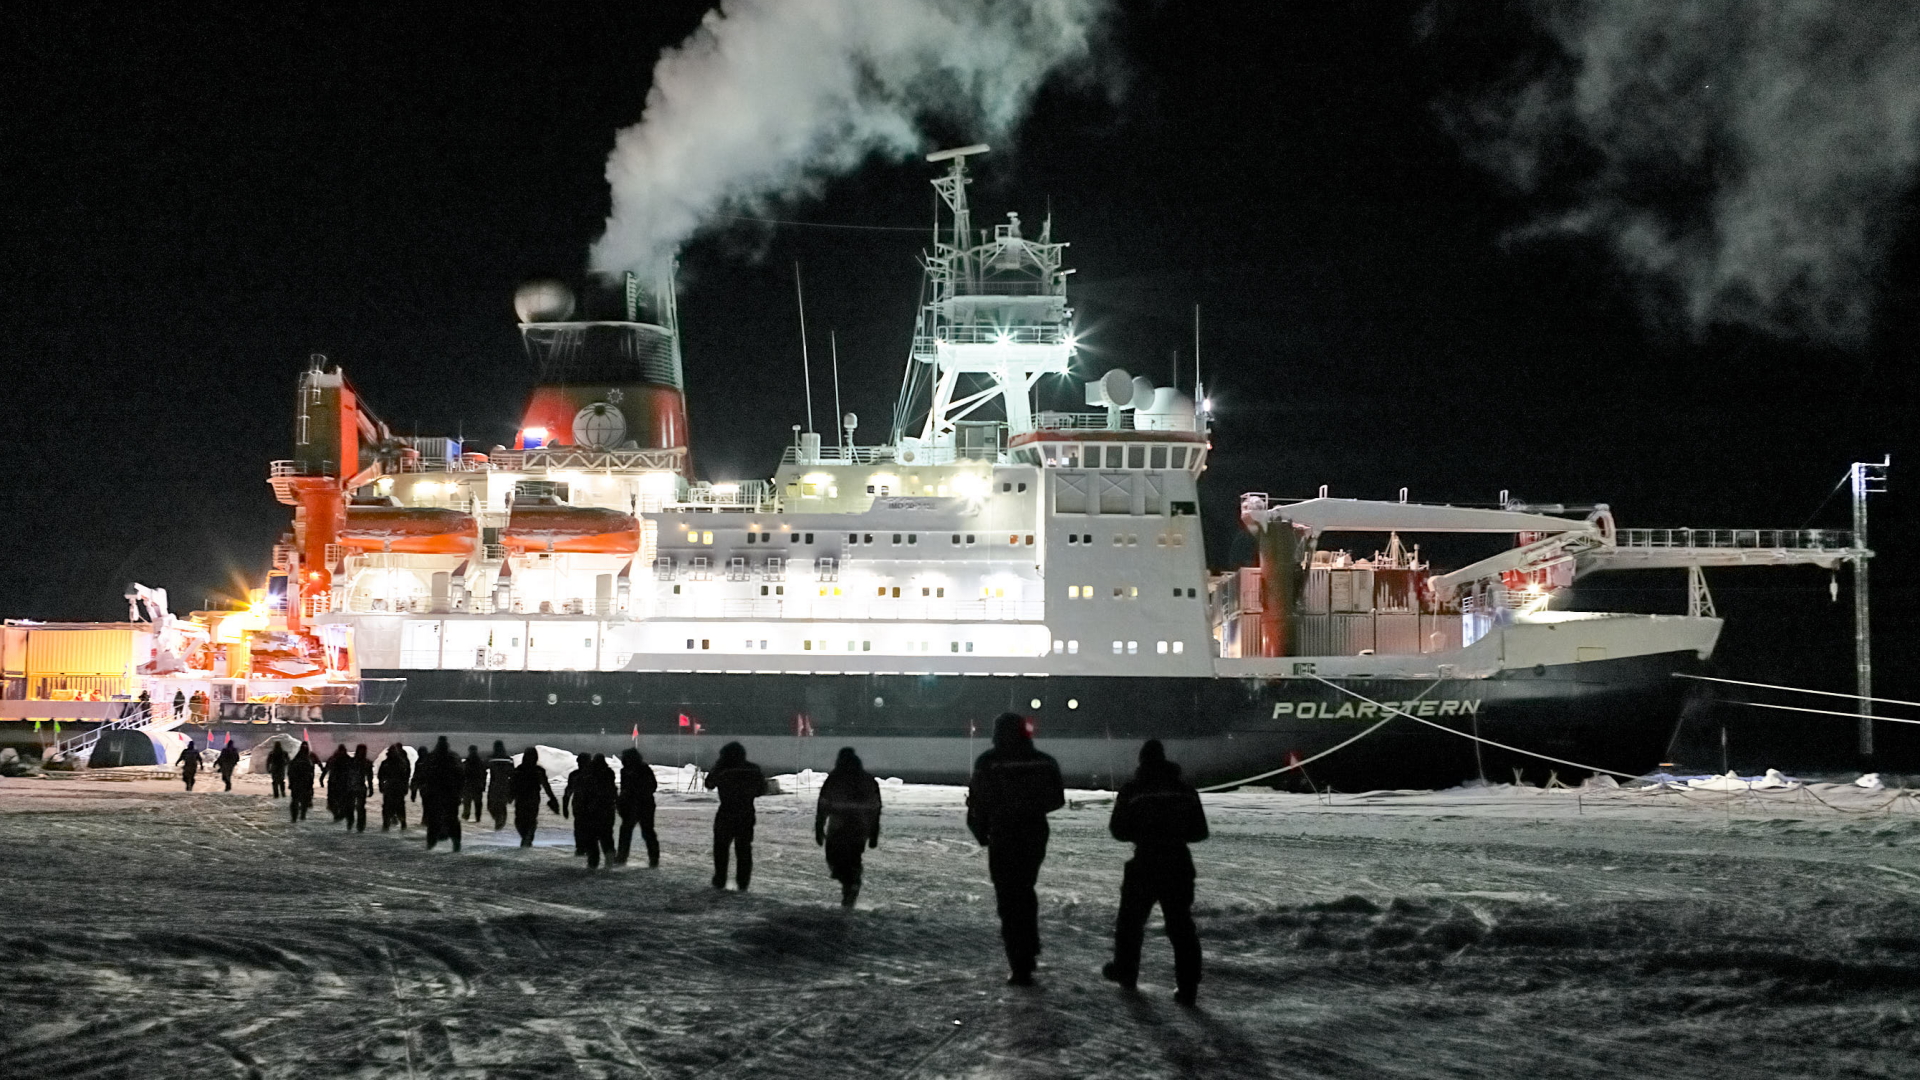 Teilnehmer der Forschungsexpedition "Mosaic" vor dem Forschungsschiff "Polarstern" (Archivbild 28.02.2020) | dpa